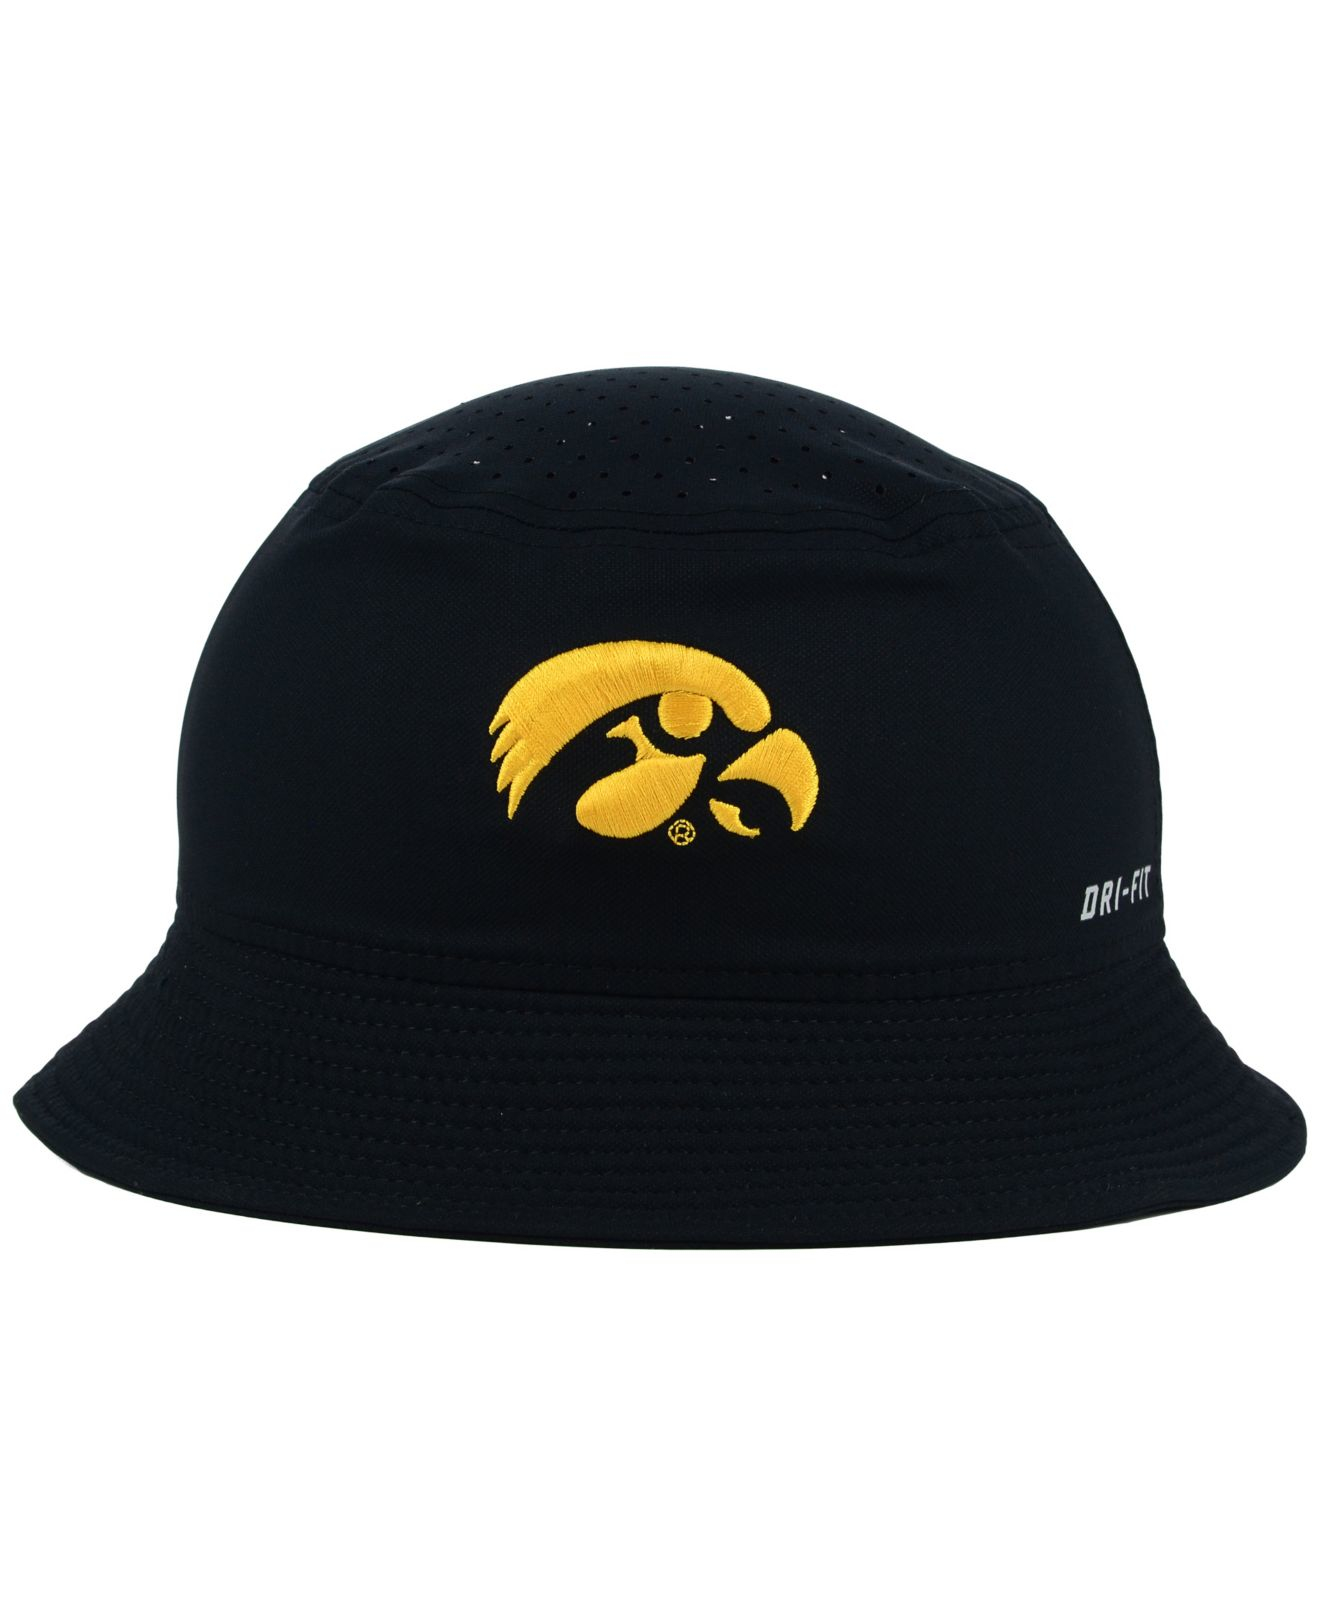 Nike Iowa Hawkeyes Vapor Bucket Hat in Black for Men - Lyst